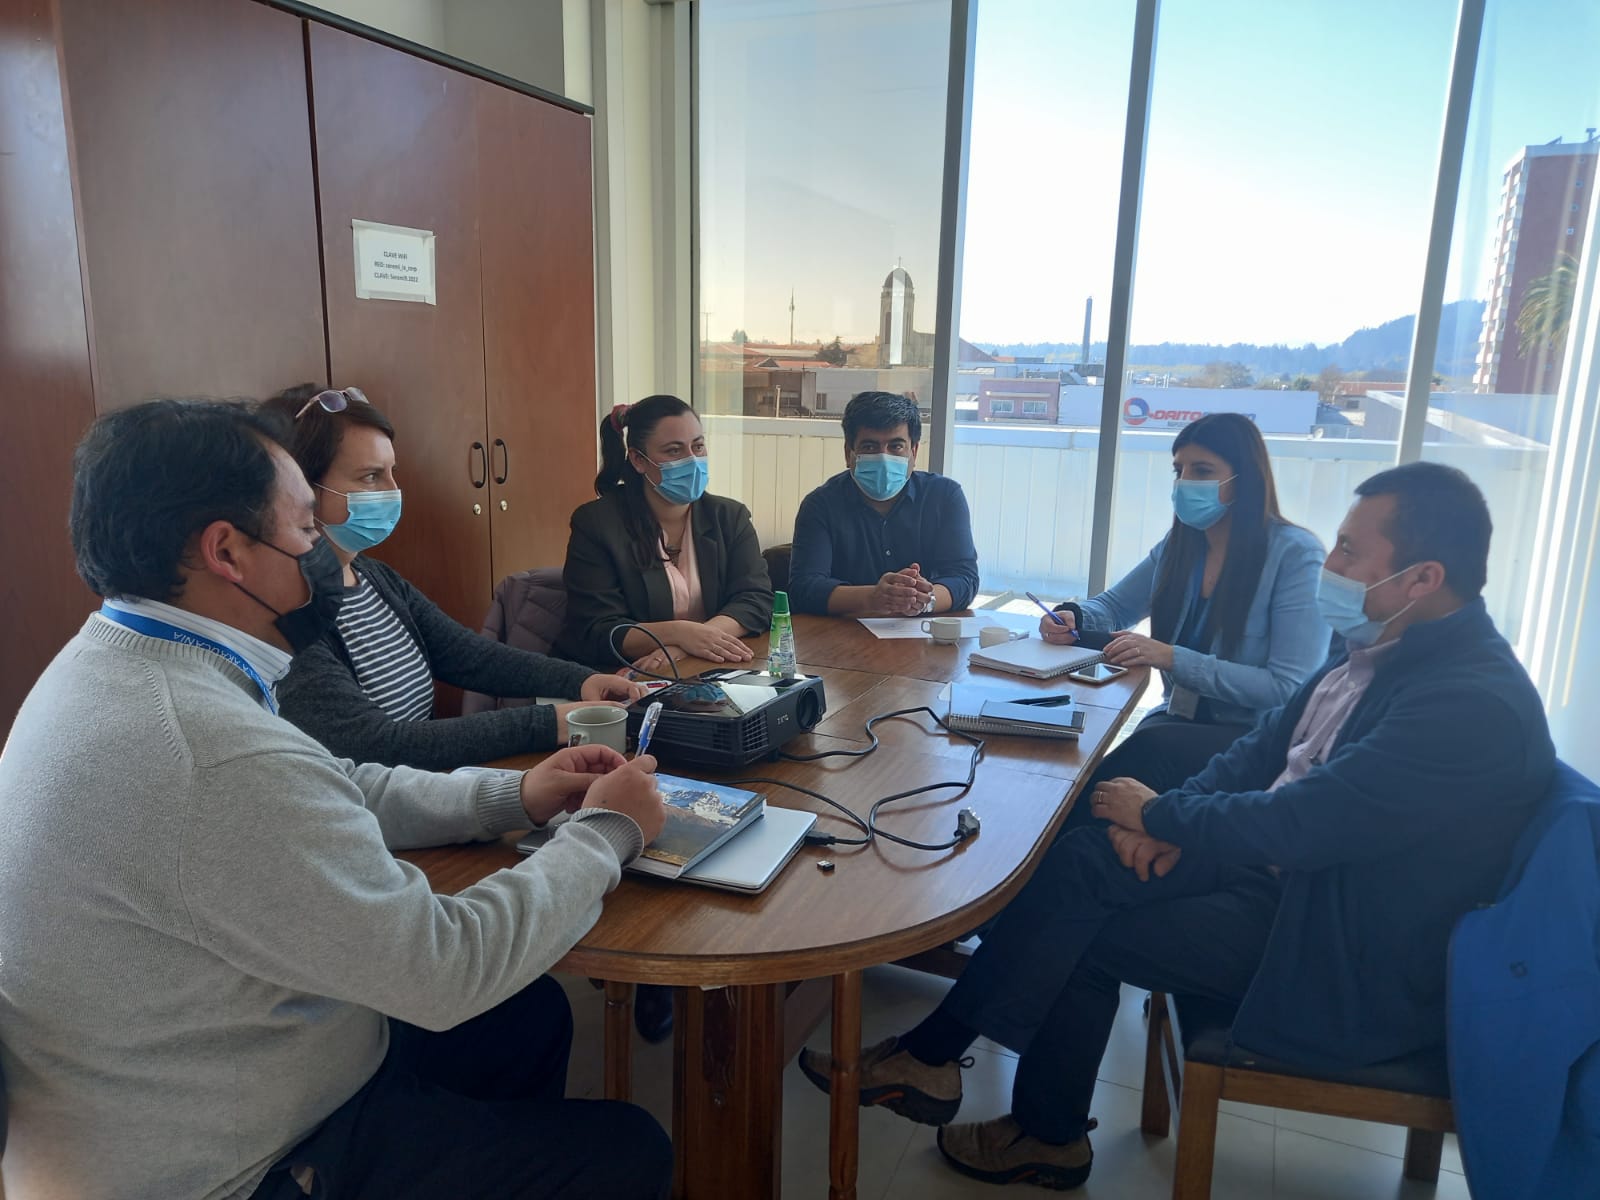  Instituto Interdisciplinario del Agua Rukako sostiene reunión de trabajo con autoridades de la Seremi de Salud de La Araucanía